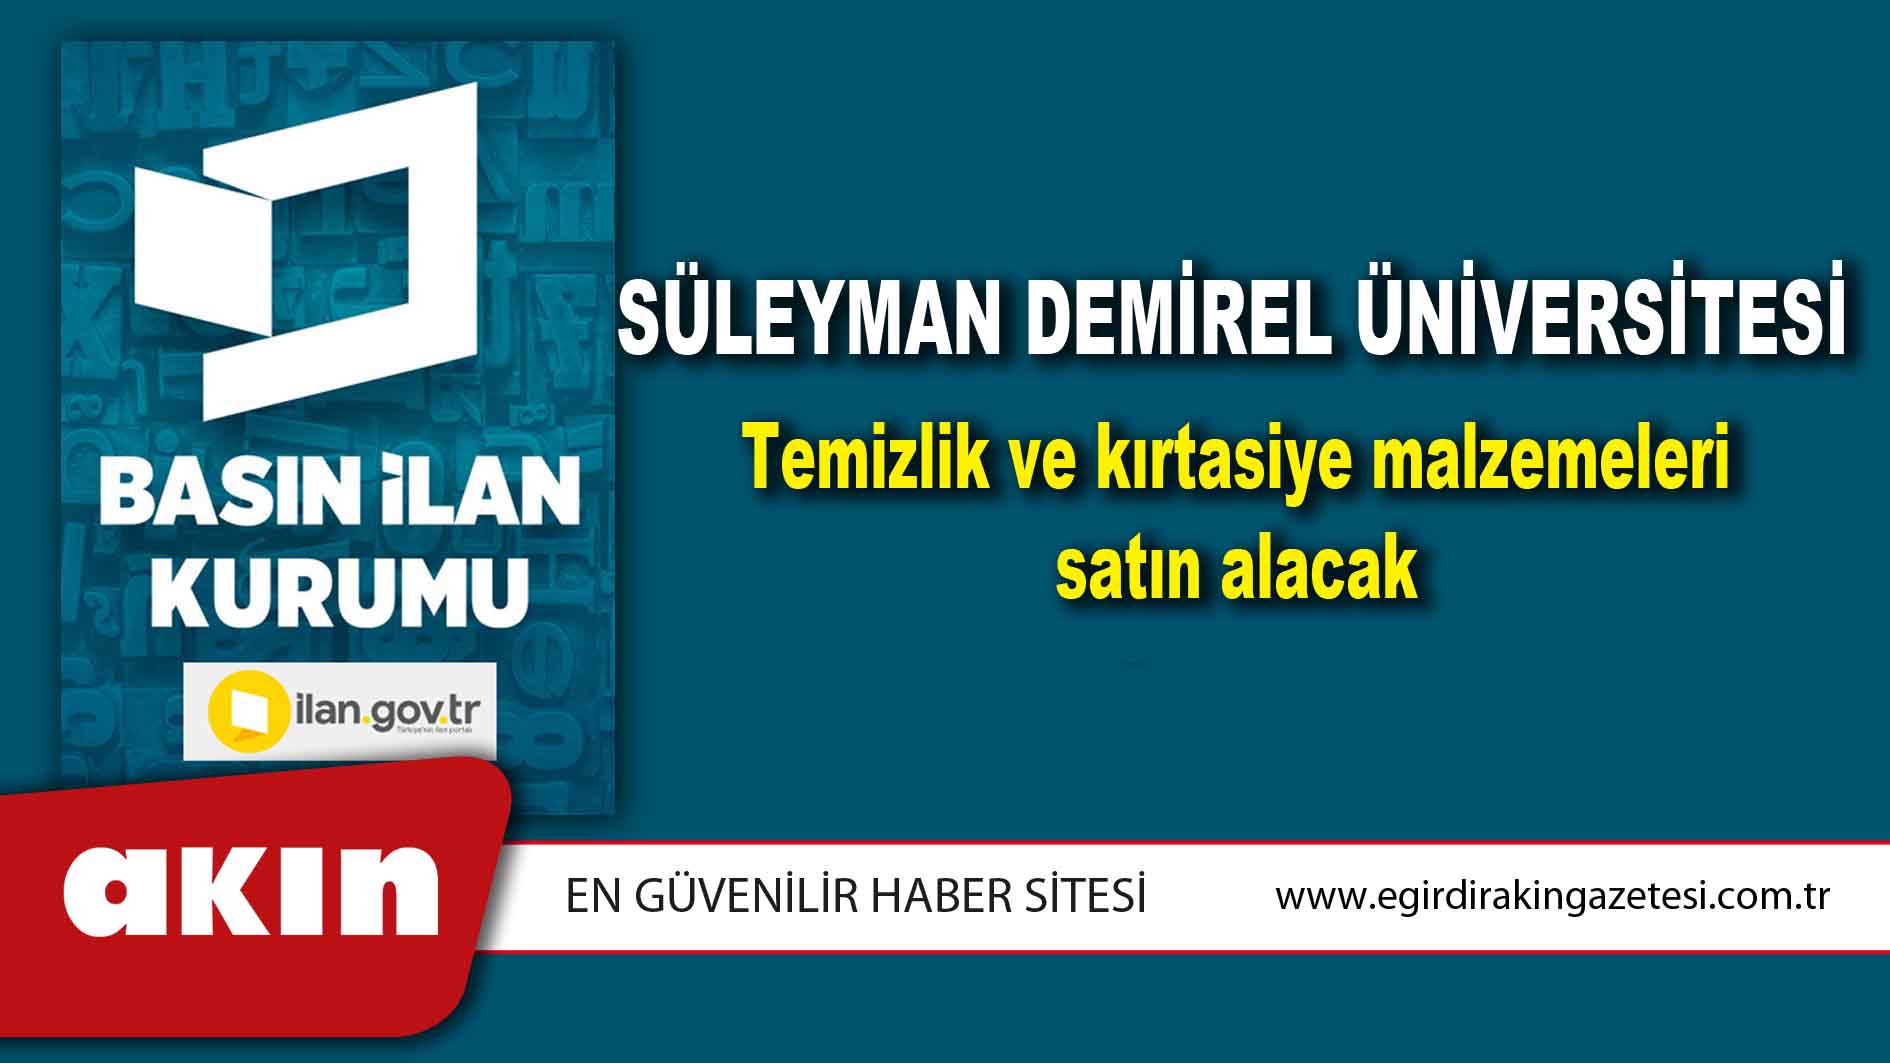 Süleyman Demirel Üniversitesi Temizlik ve kırtasiye malzemeleri satın alacak